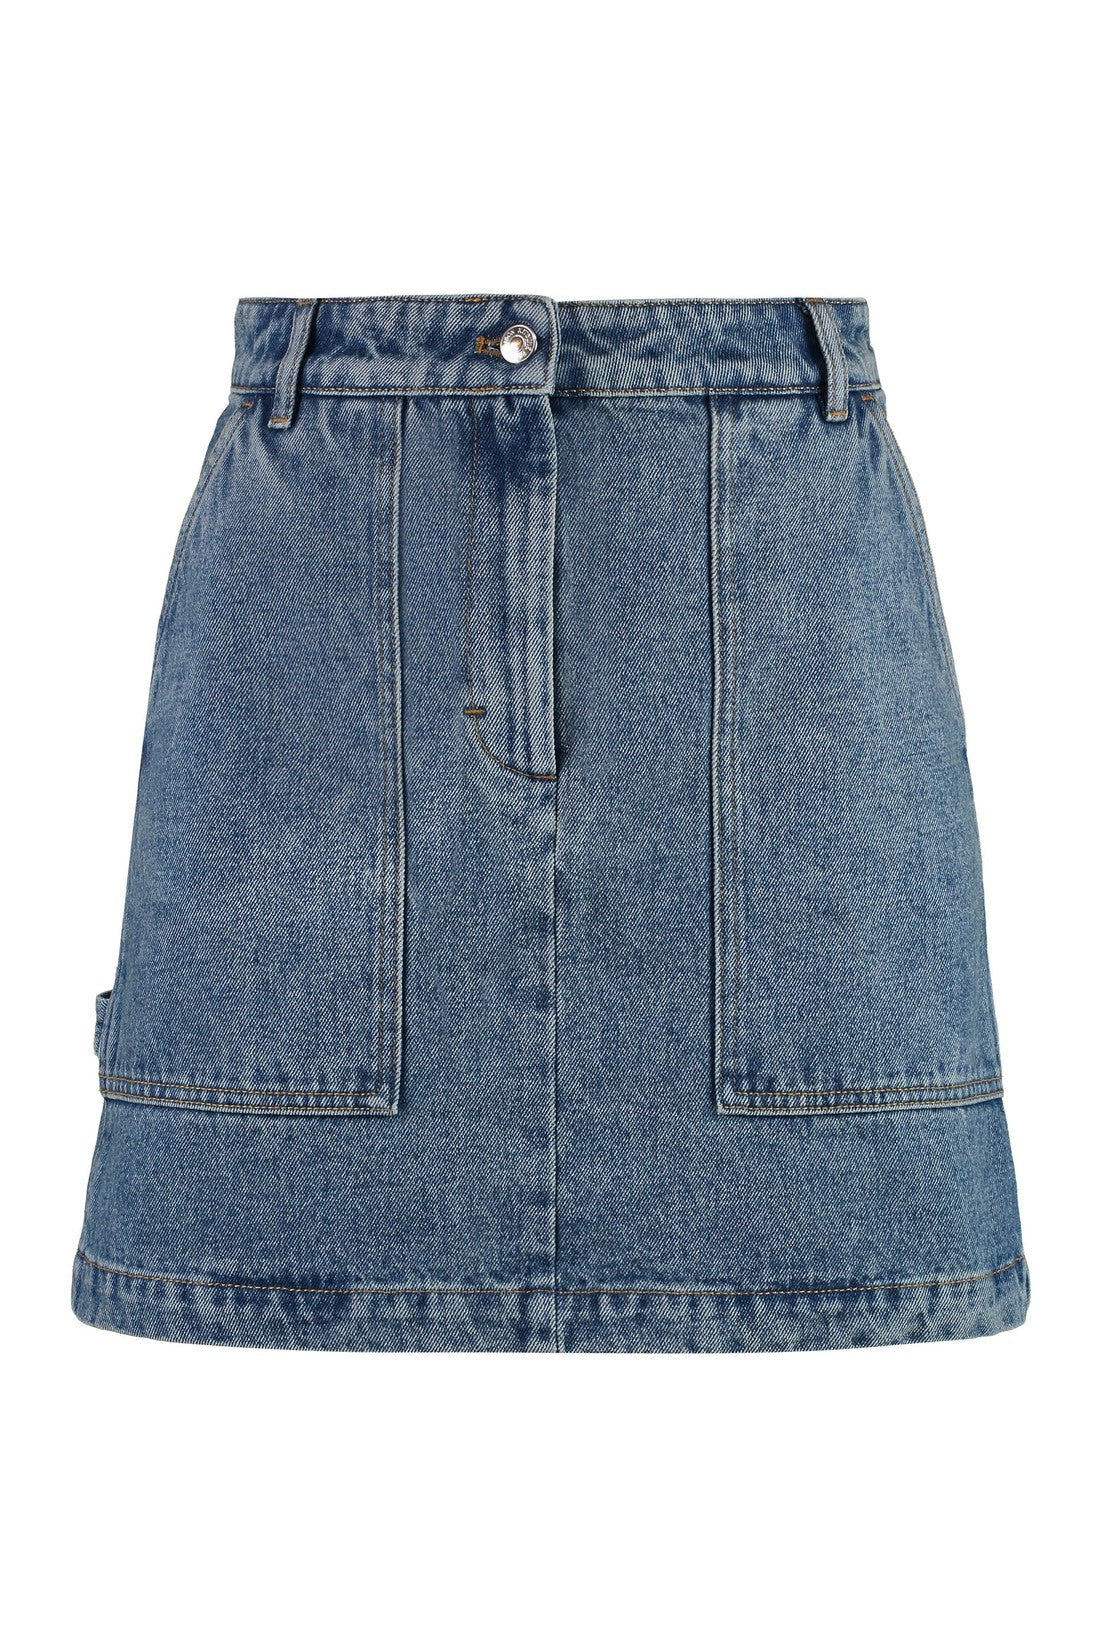 Maison Kitsuné-OUTLET-SALE-Denim mini skirt-ARCHIVIST